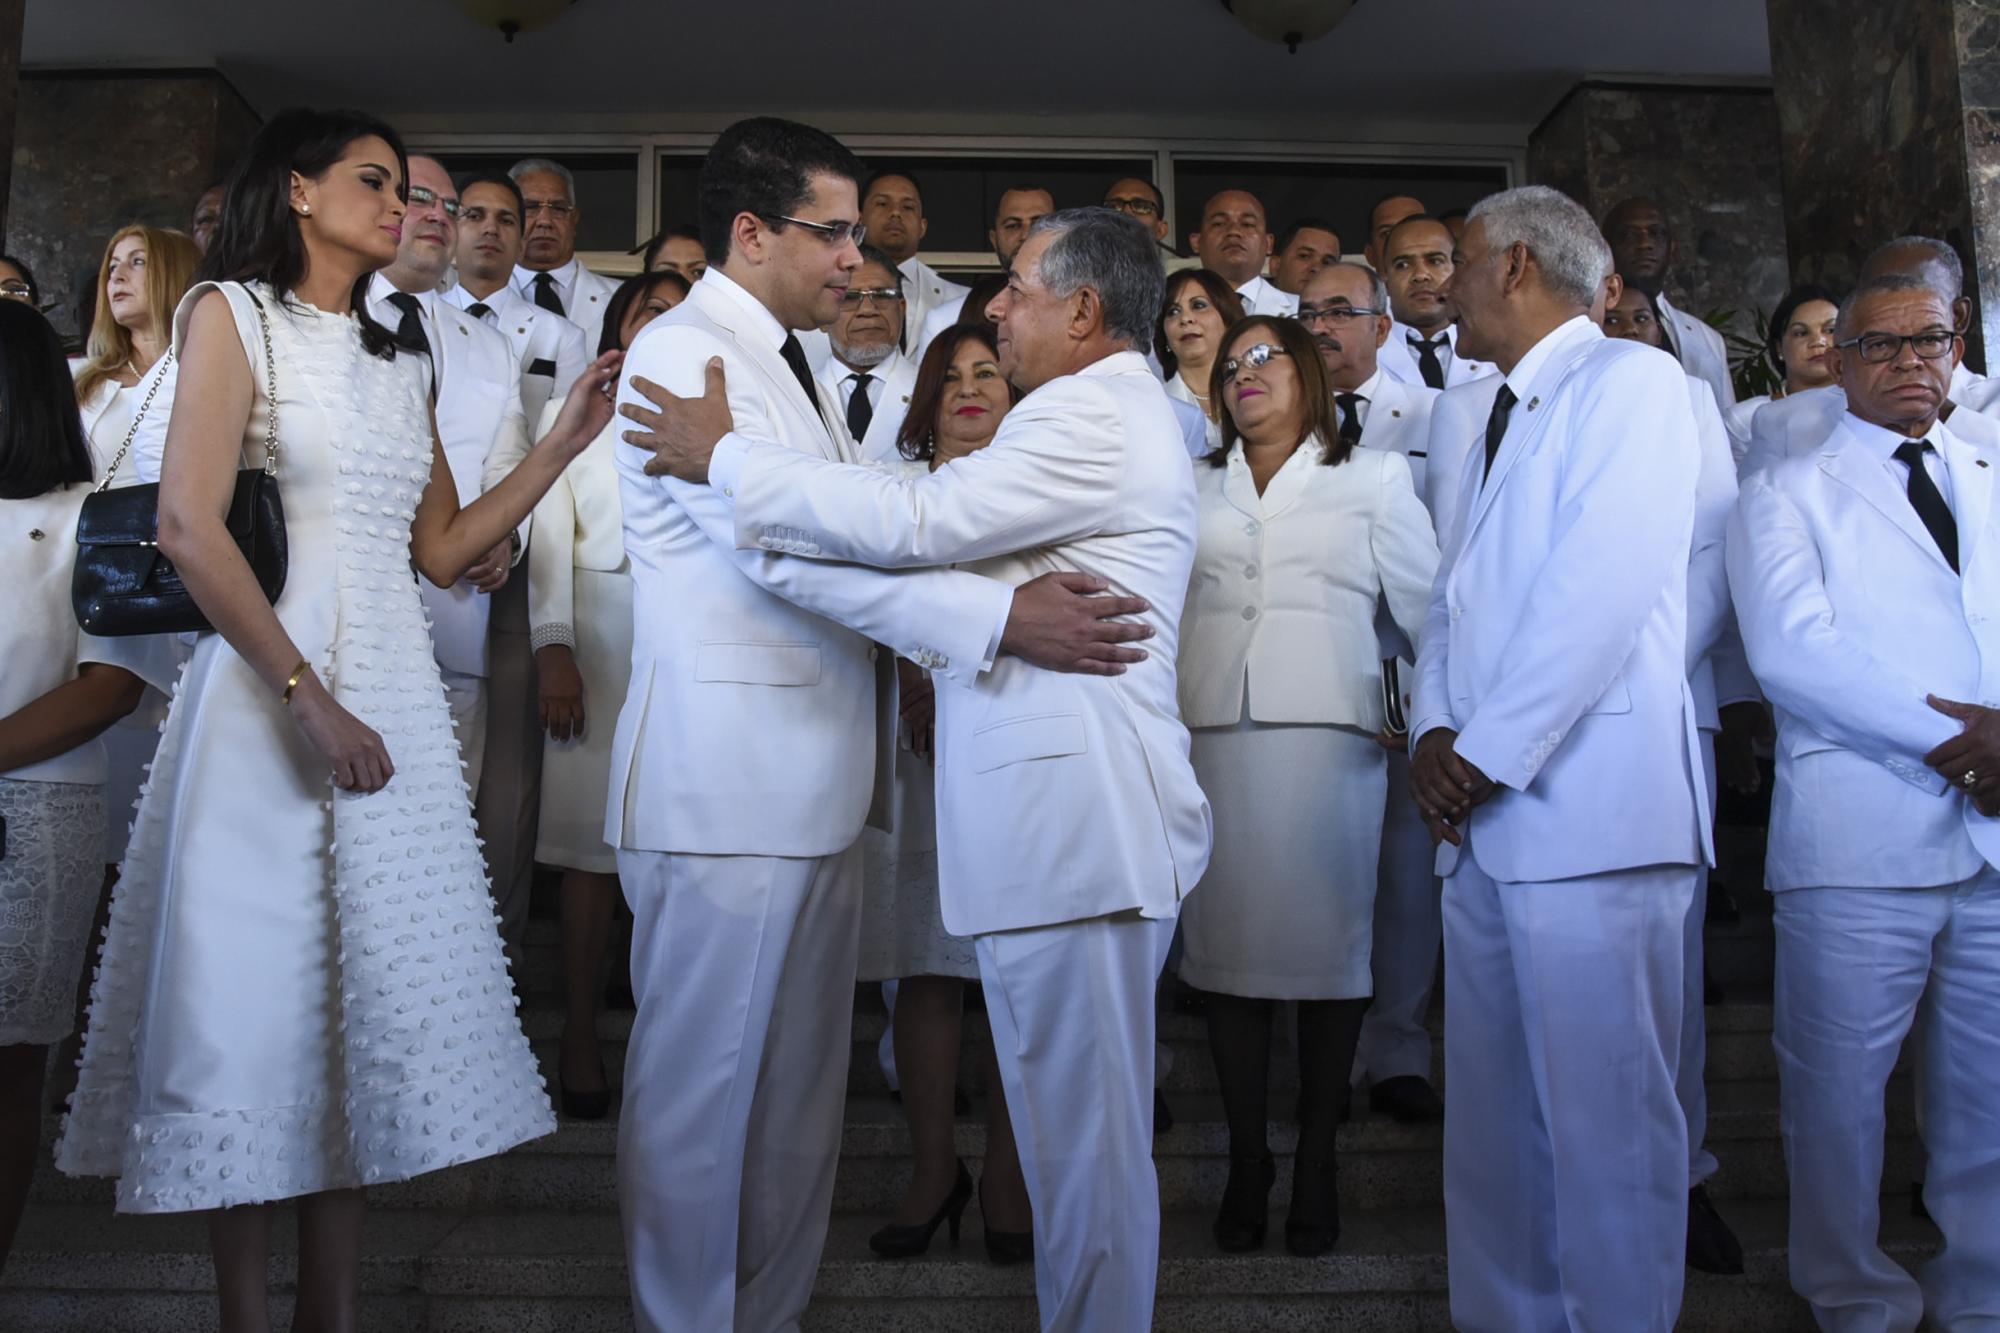 El alcalde David Collado despide a su predecesor, Roberto Salcedo, durante los actos de juramentación en el Ayuntamiento del Distrito Nacional, el 16 de agosto de 2016.